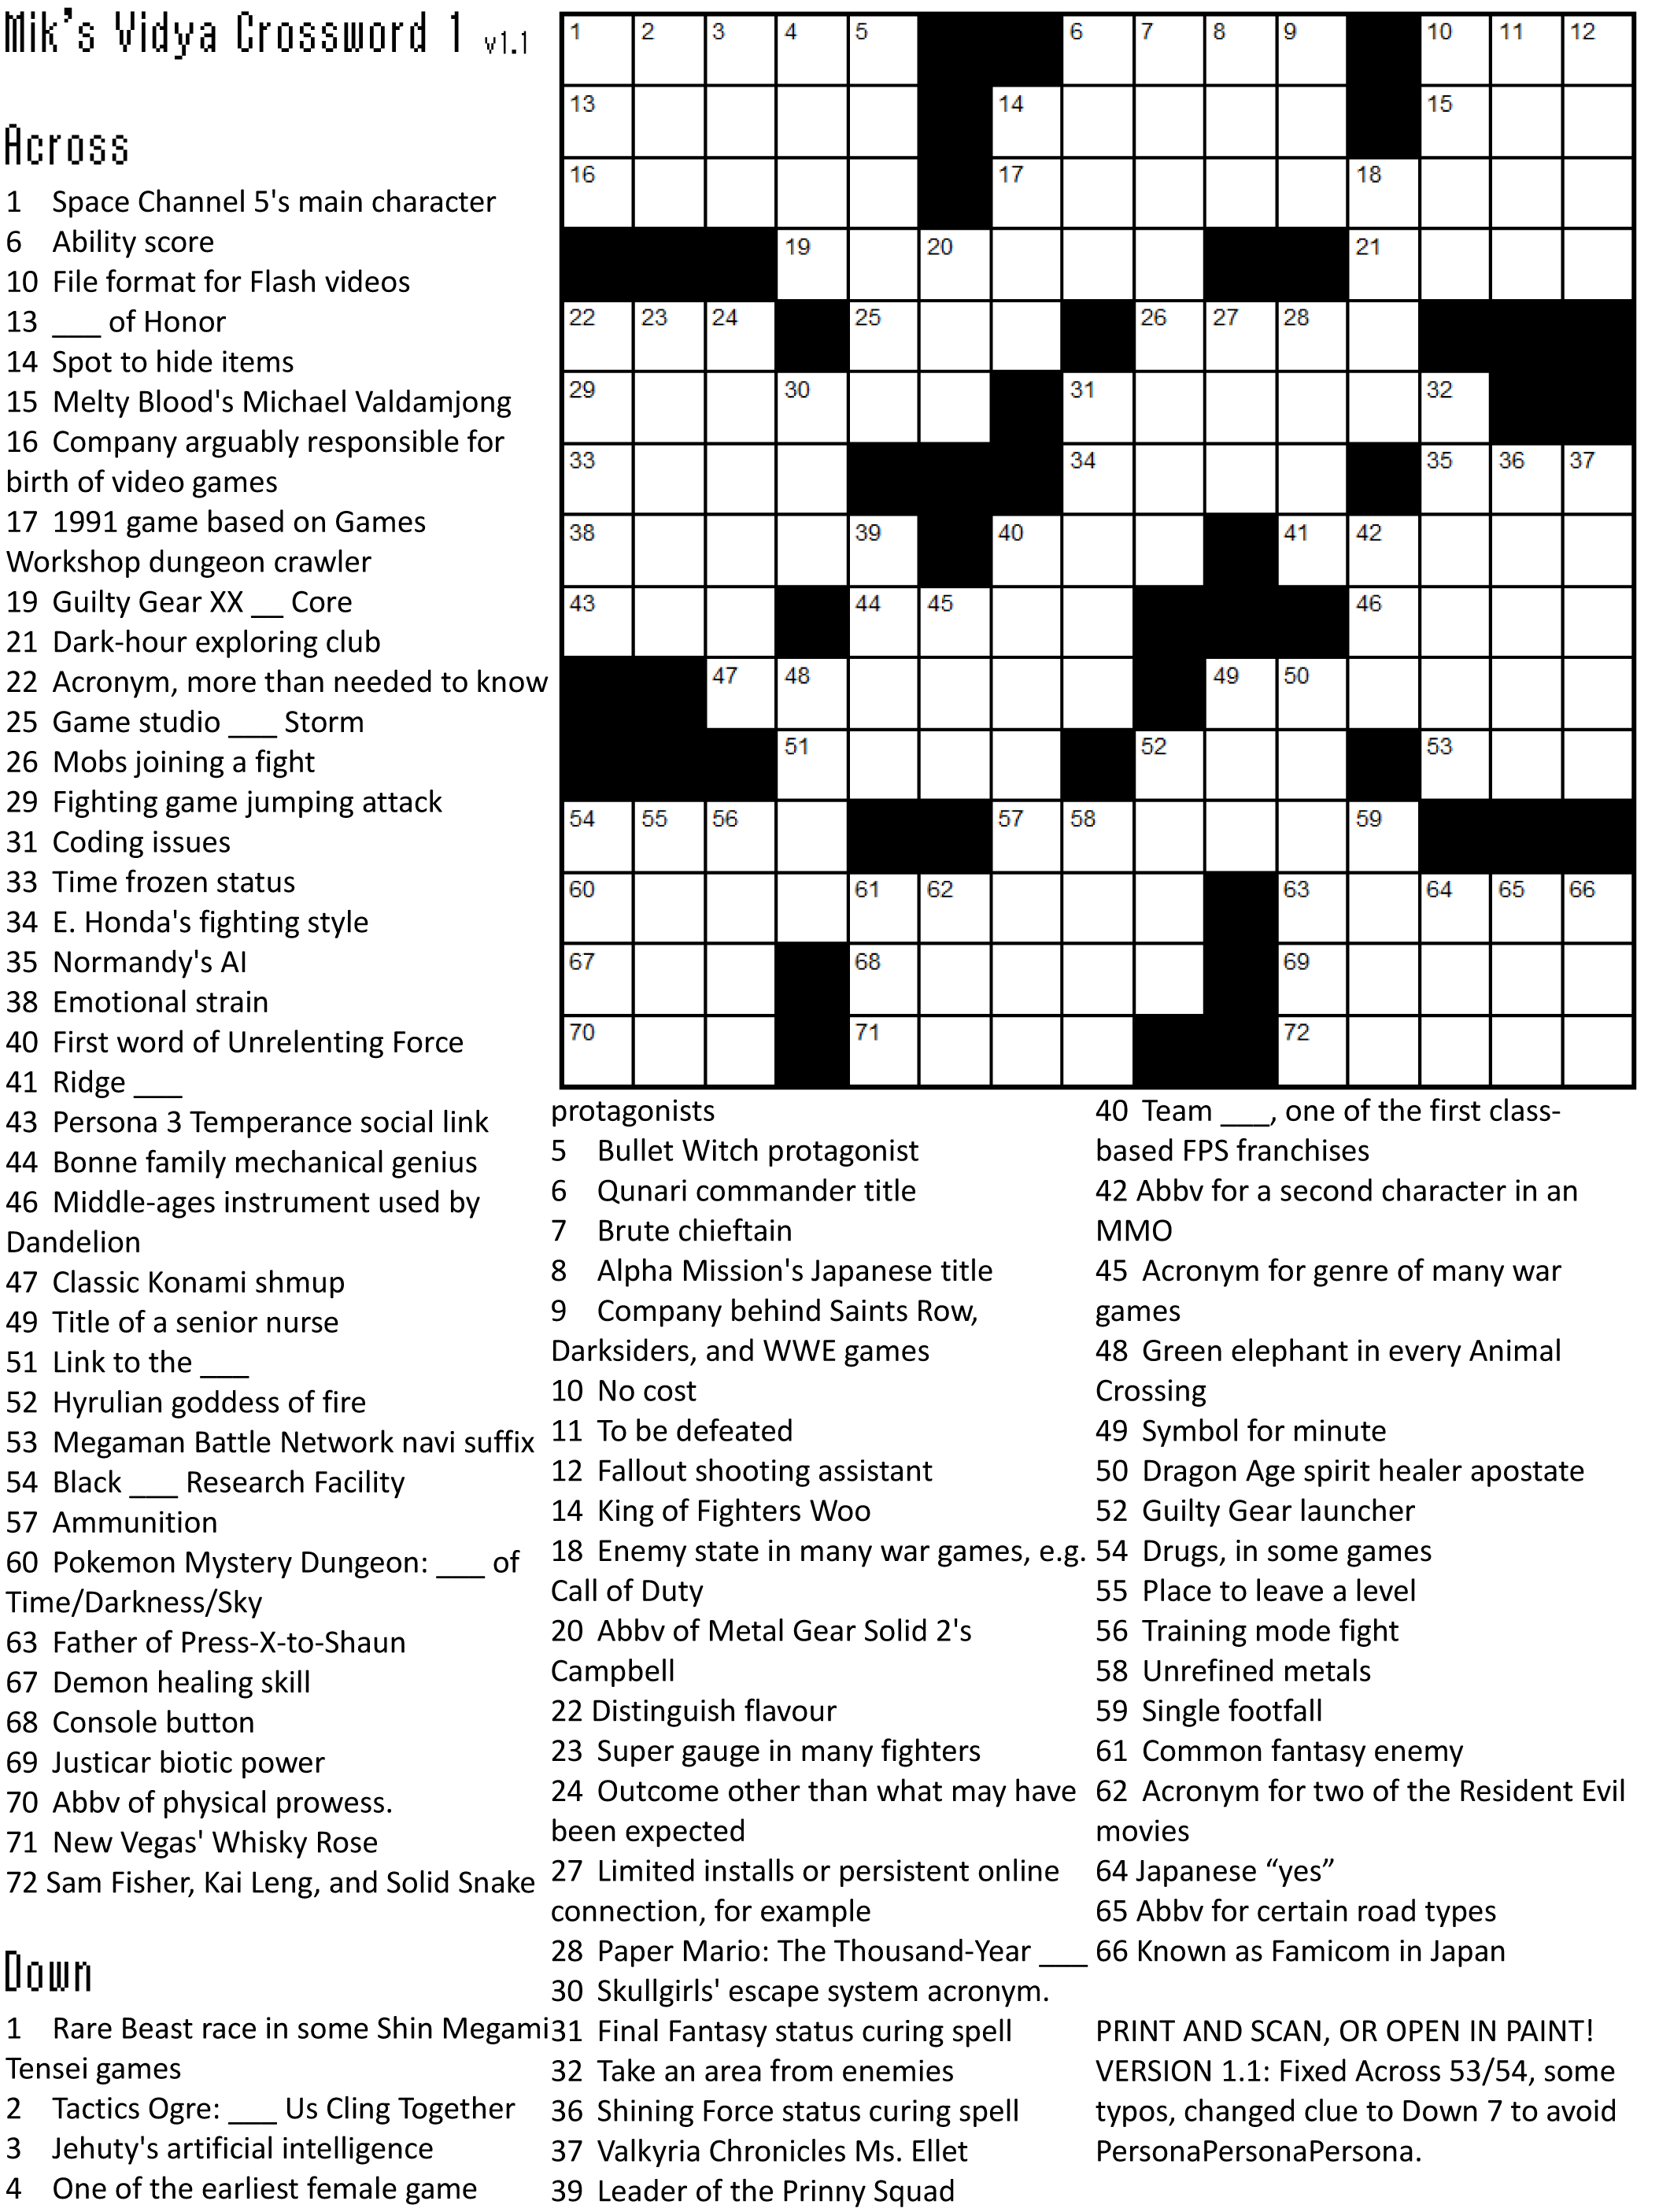 Crossword Puzzle Games | Crossword Puzzle Printable - Crossword Puzzle Games Printable